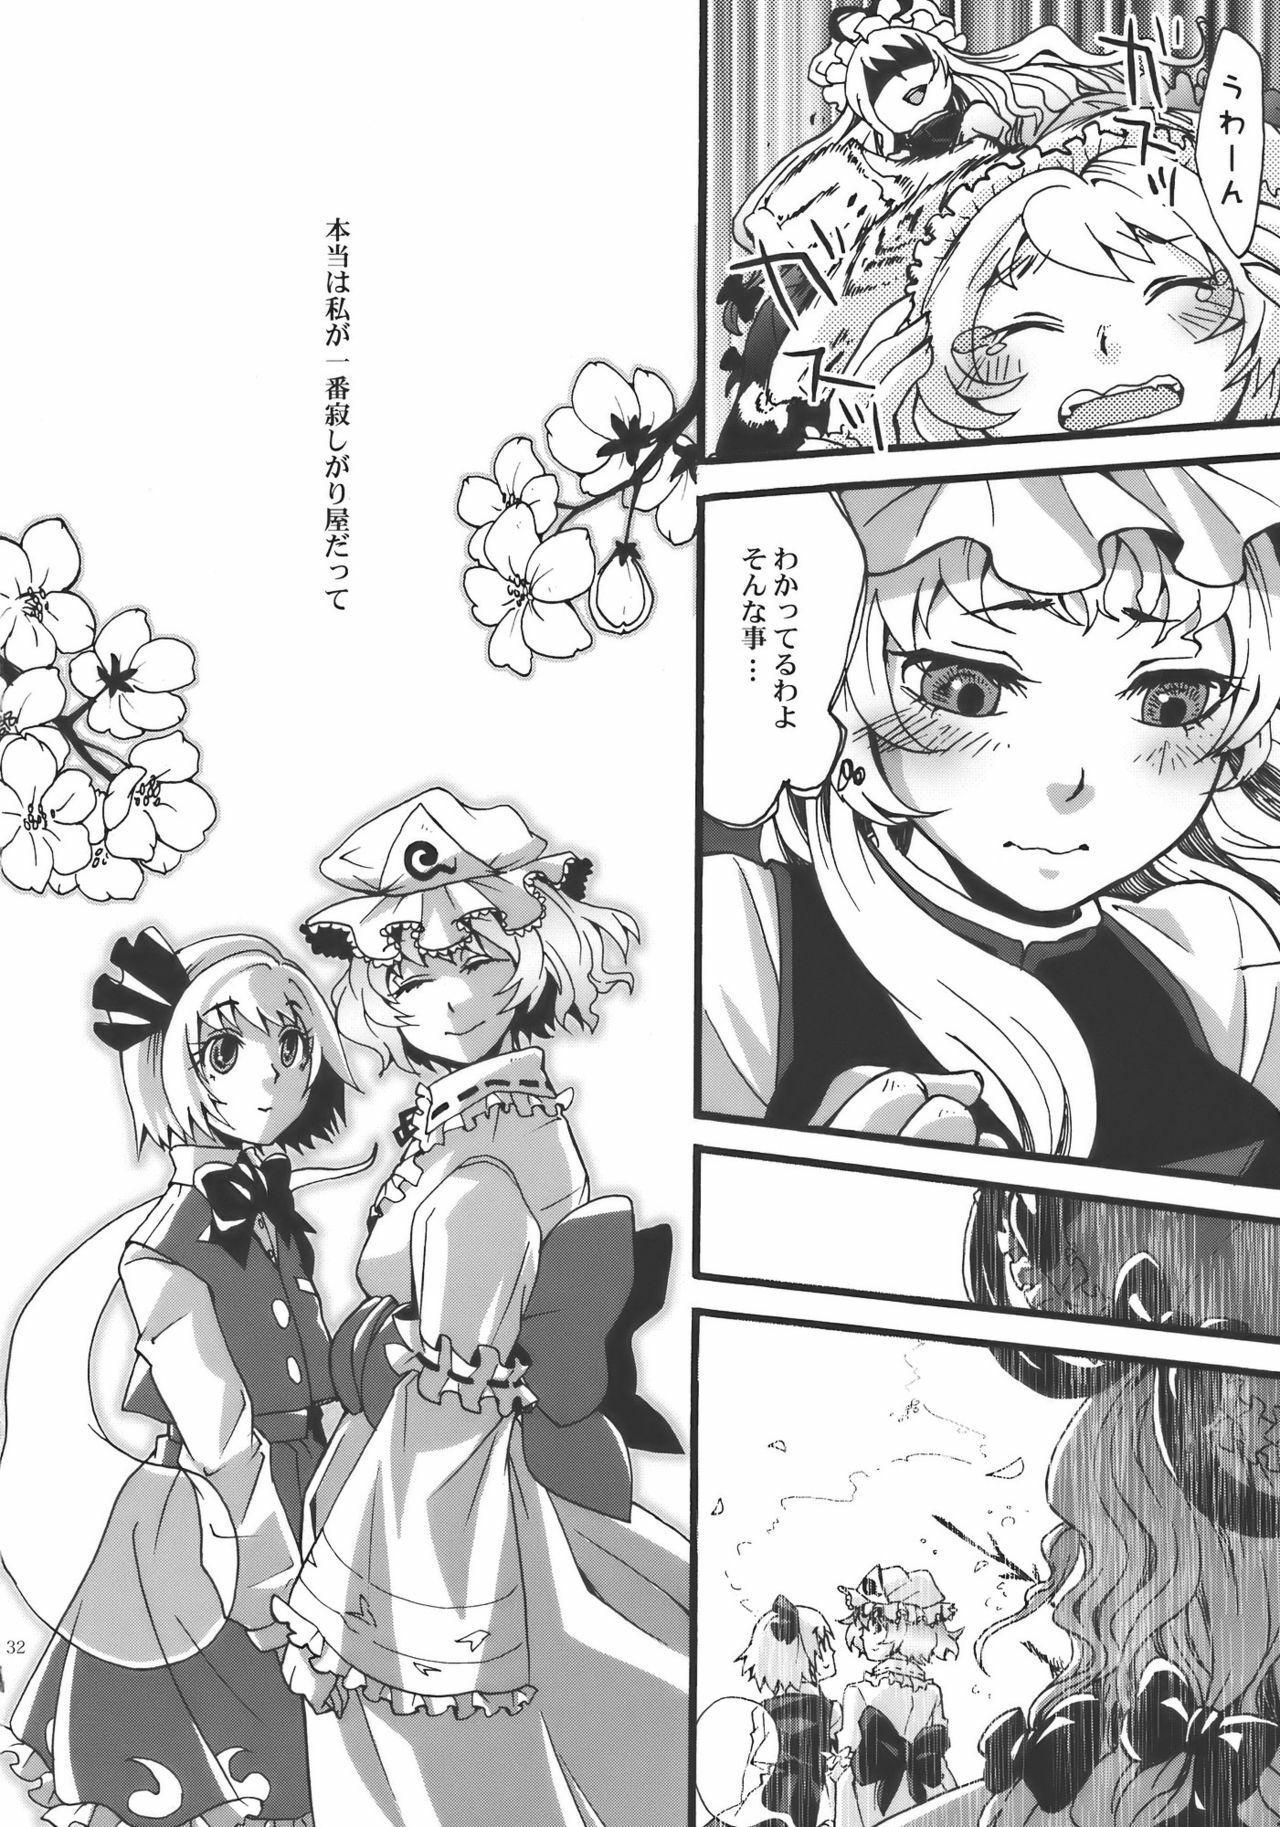 (Yuumei Sakura) [Zipper Wrist (Eguchi)] Hana no Shita Nite (Touhou Project) page 32 full